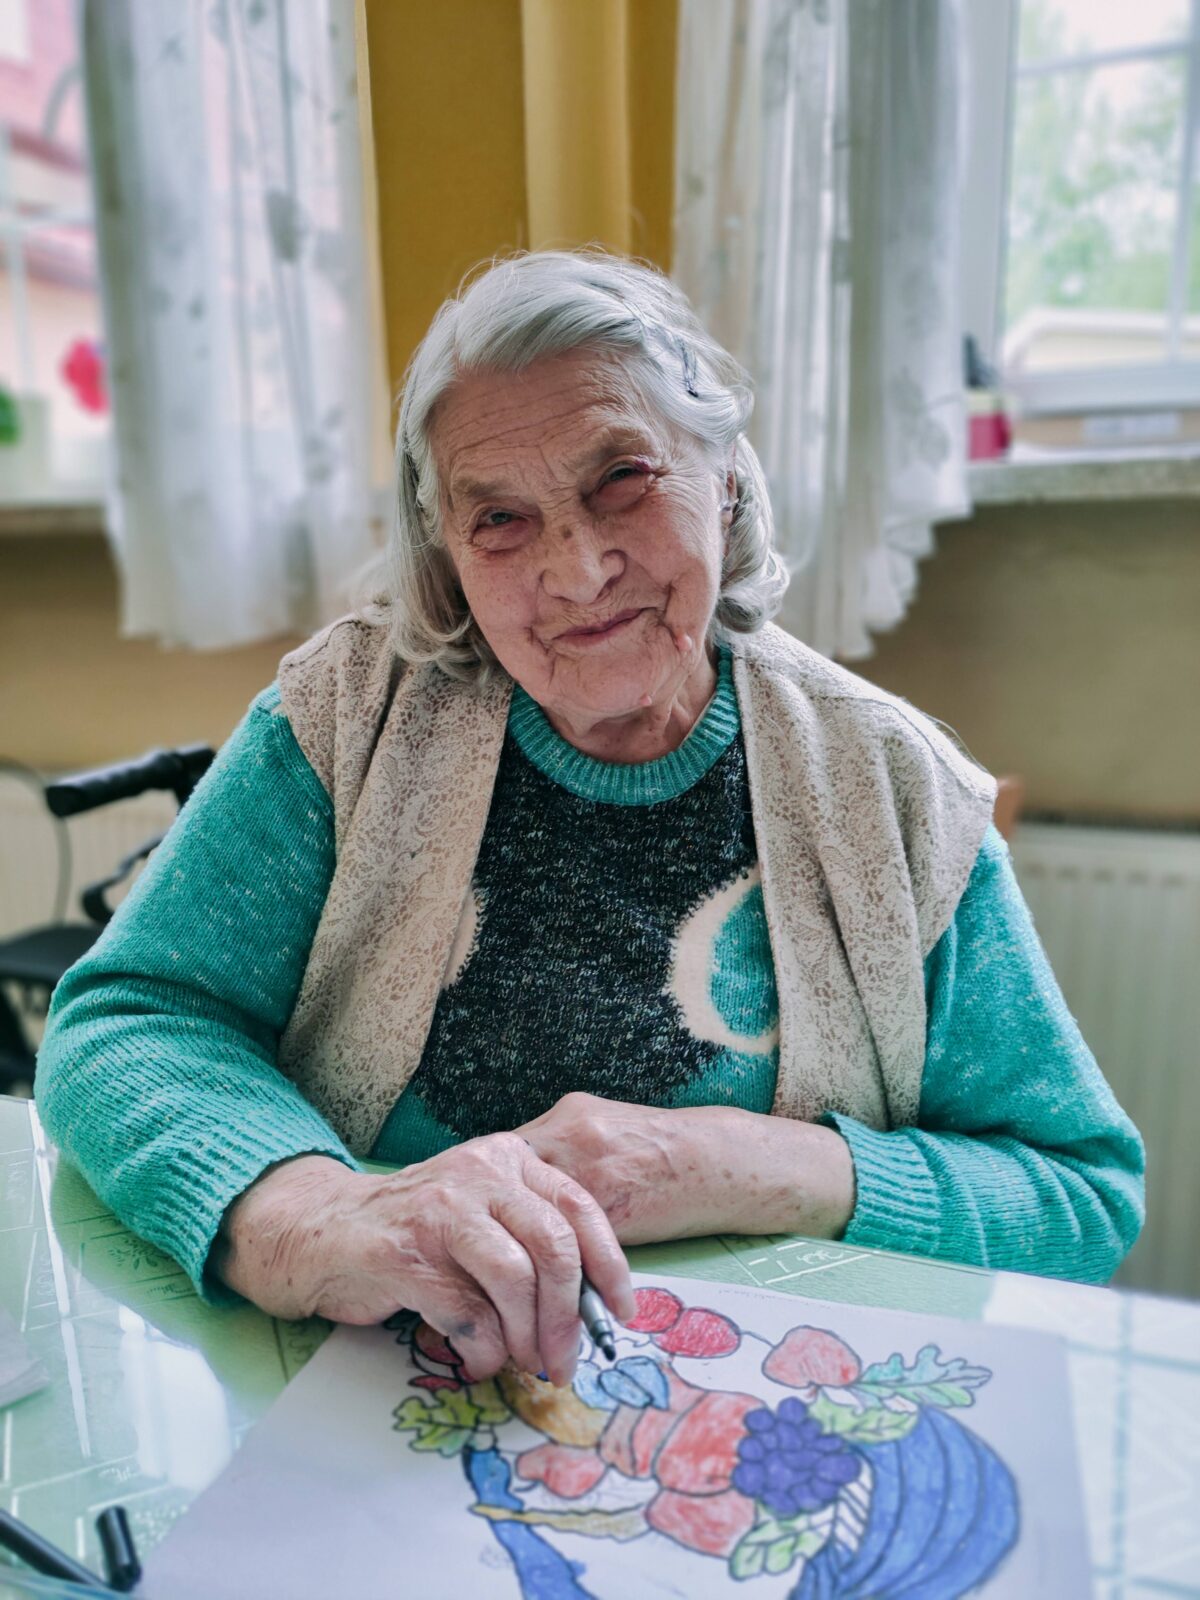 Uśmiechnięta starsza kobieta siedząca przy stole. W ręku ma kredkę, na stole jest rysunek. Kobieta patrzy prosto w obiektyw.